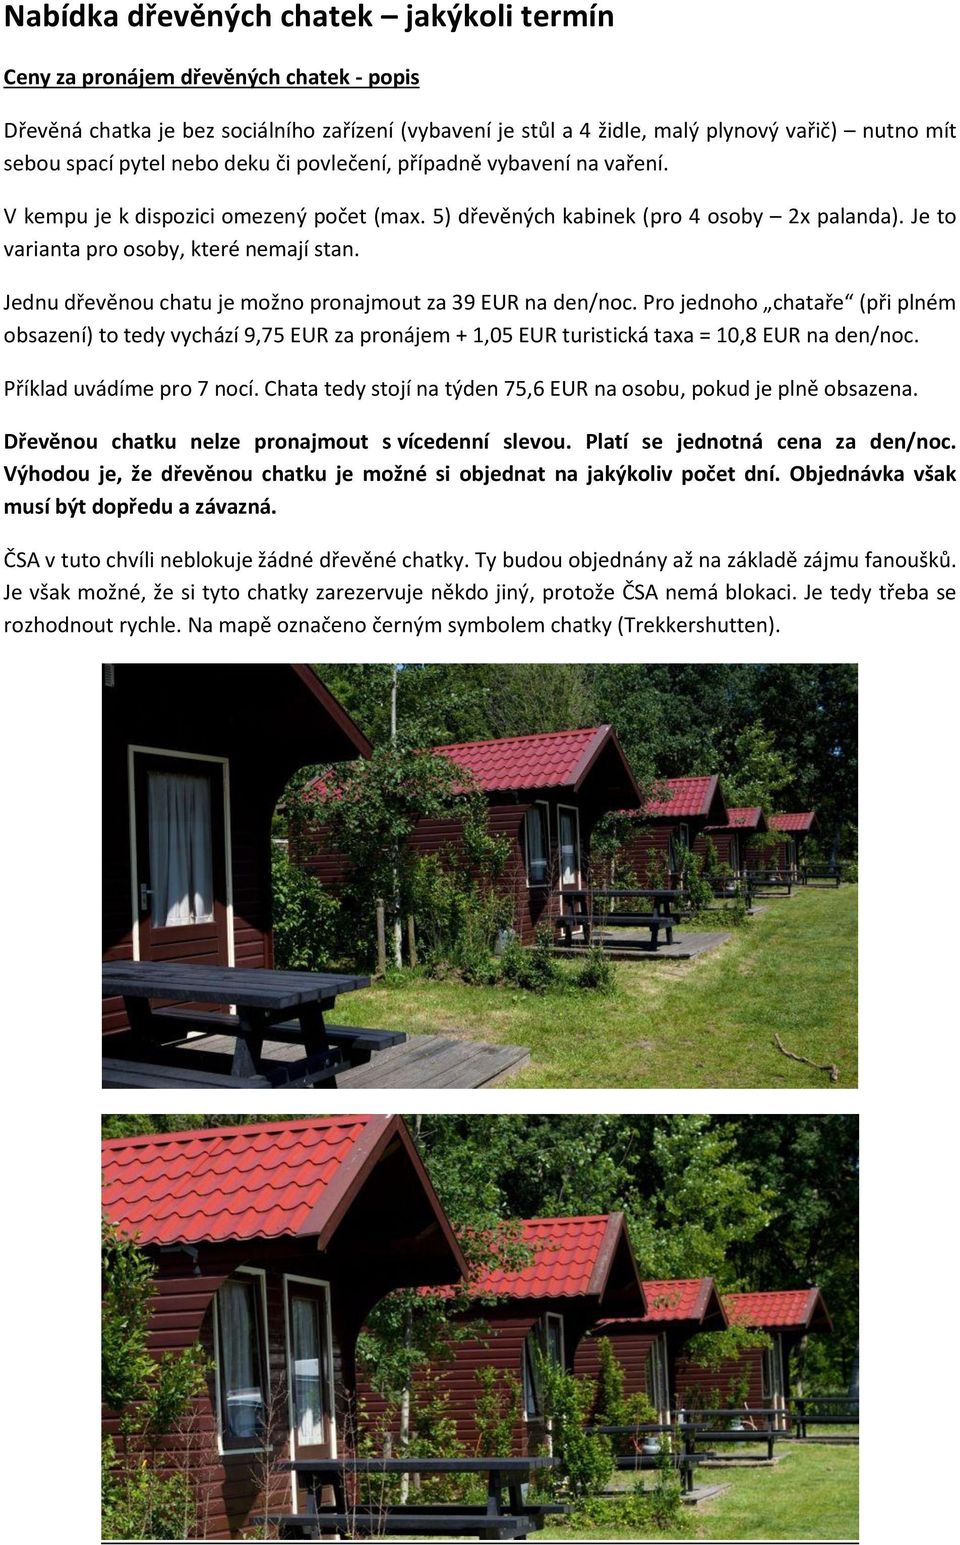 Jednu dřevěnou chatu je možno pronajmout za 39 EUR na den/noc. Pro jednoho chataře (při plném obsazení) to tedy vychází 9,75 EUR za pronájem + 1,05 EUR turistická taxa = 10,8 EUR na den/noc.